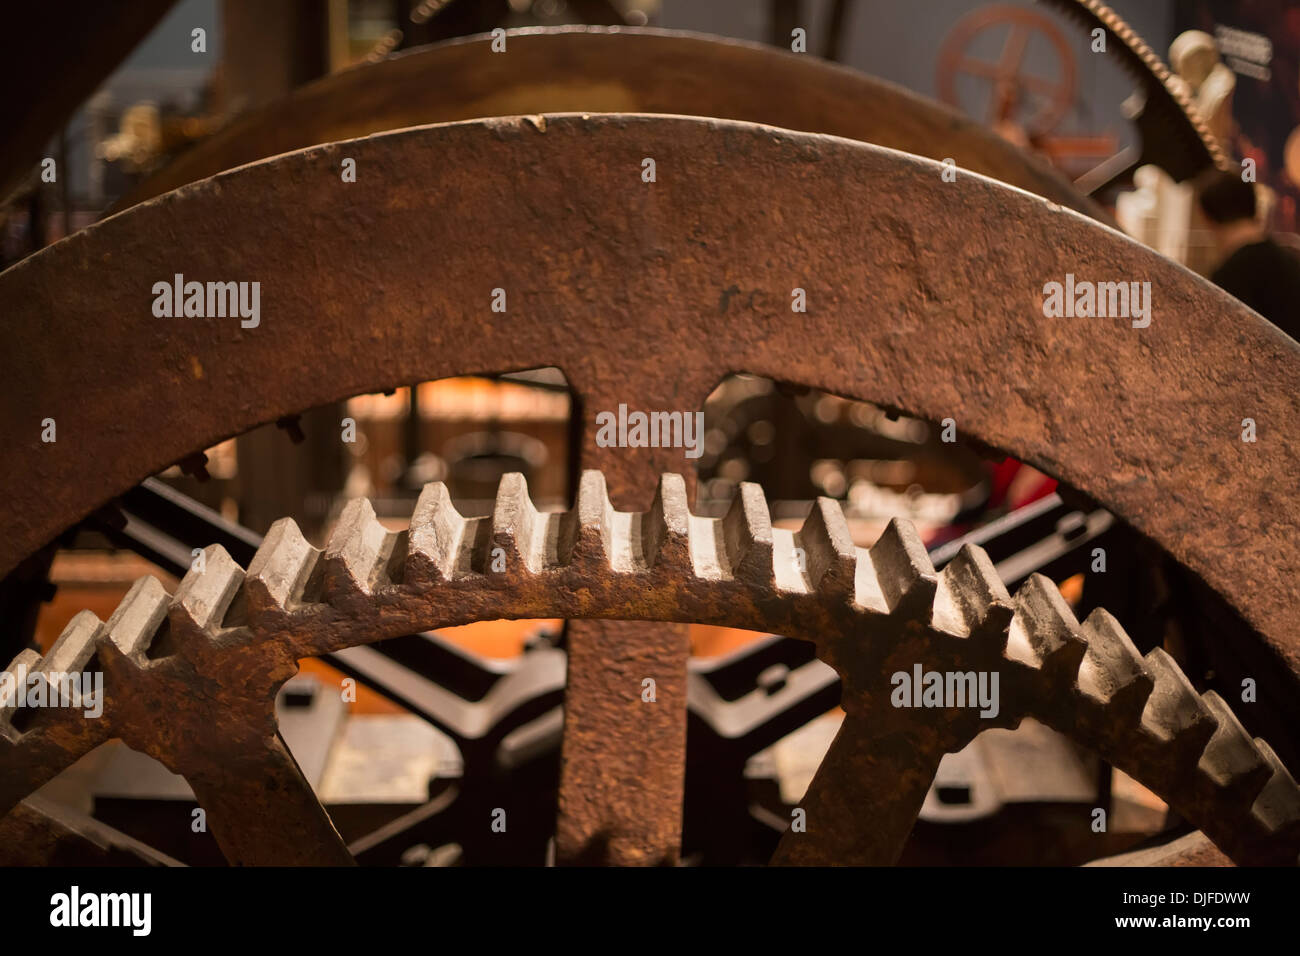 Dearborn, Michigan - dettaglio del Dudley motore a vapore risalente circa 1791 in mostra presso il Museo di Henry Ford. Foto Stock